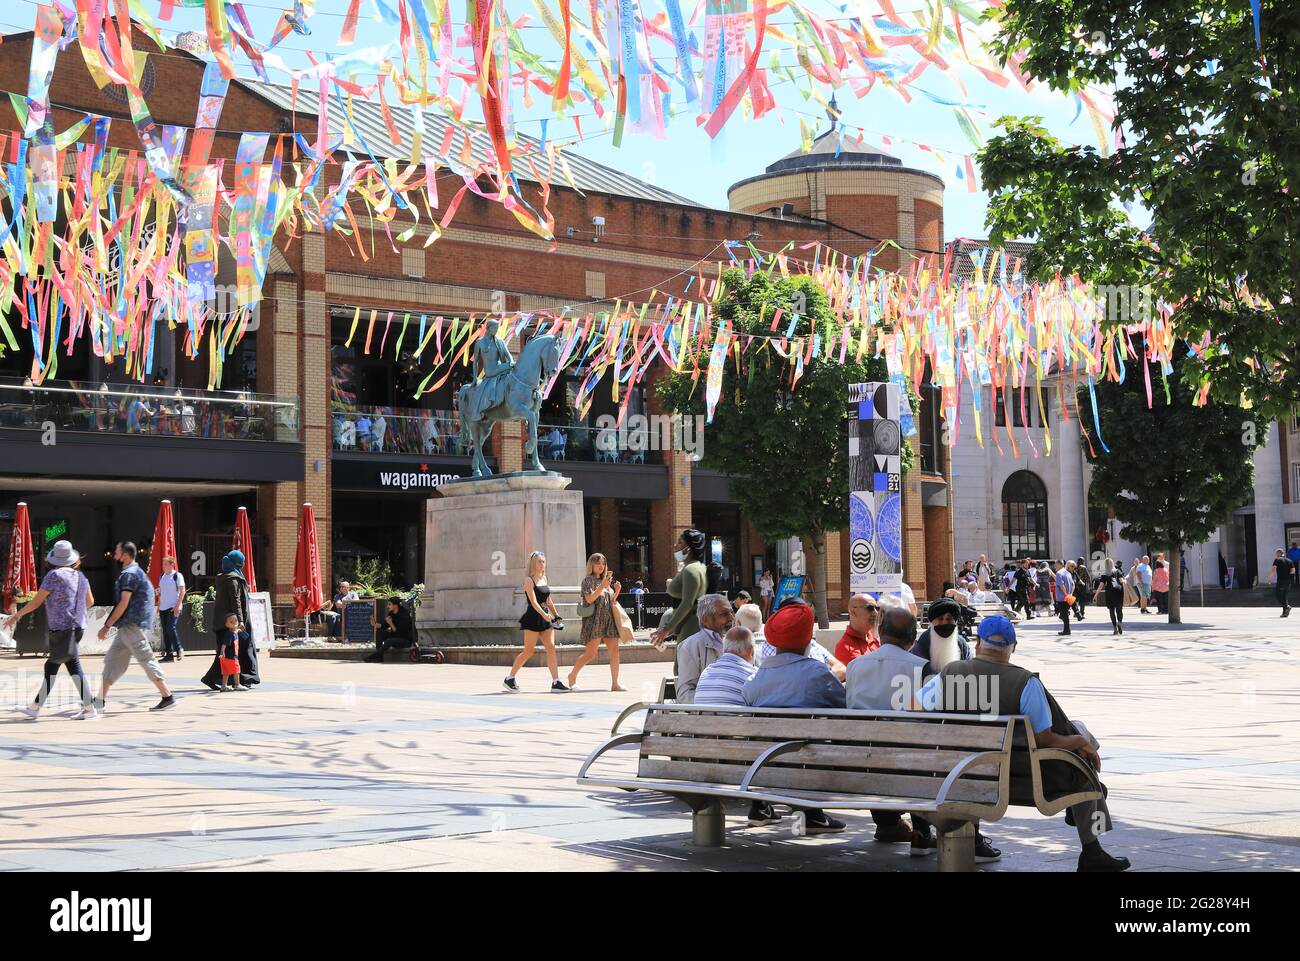 Une marquise de rubans arc-en-ciel surmontée la place Broadgate, à l'occasion de la cérémonie d'ouverture de la ville de culture britannique de Coventry, le 4 juin 2021. Banque D'Images